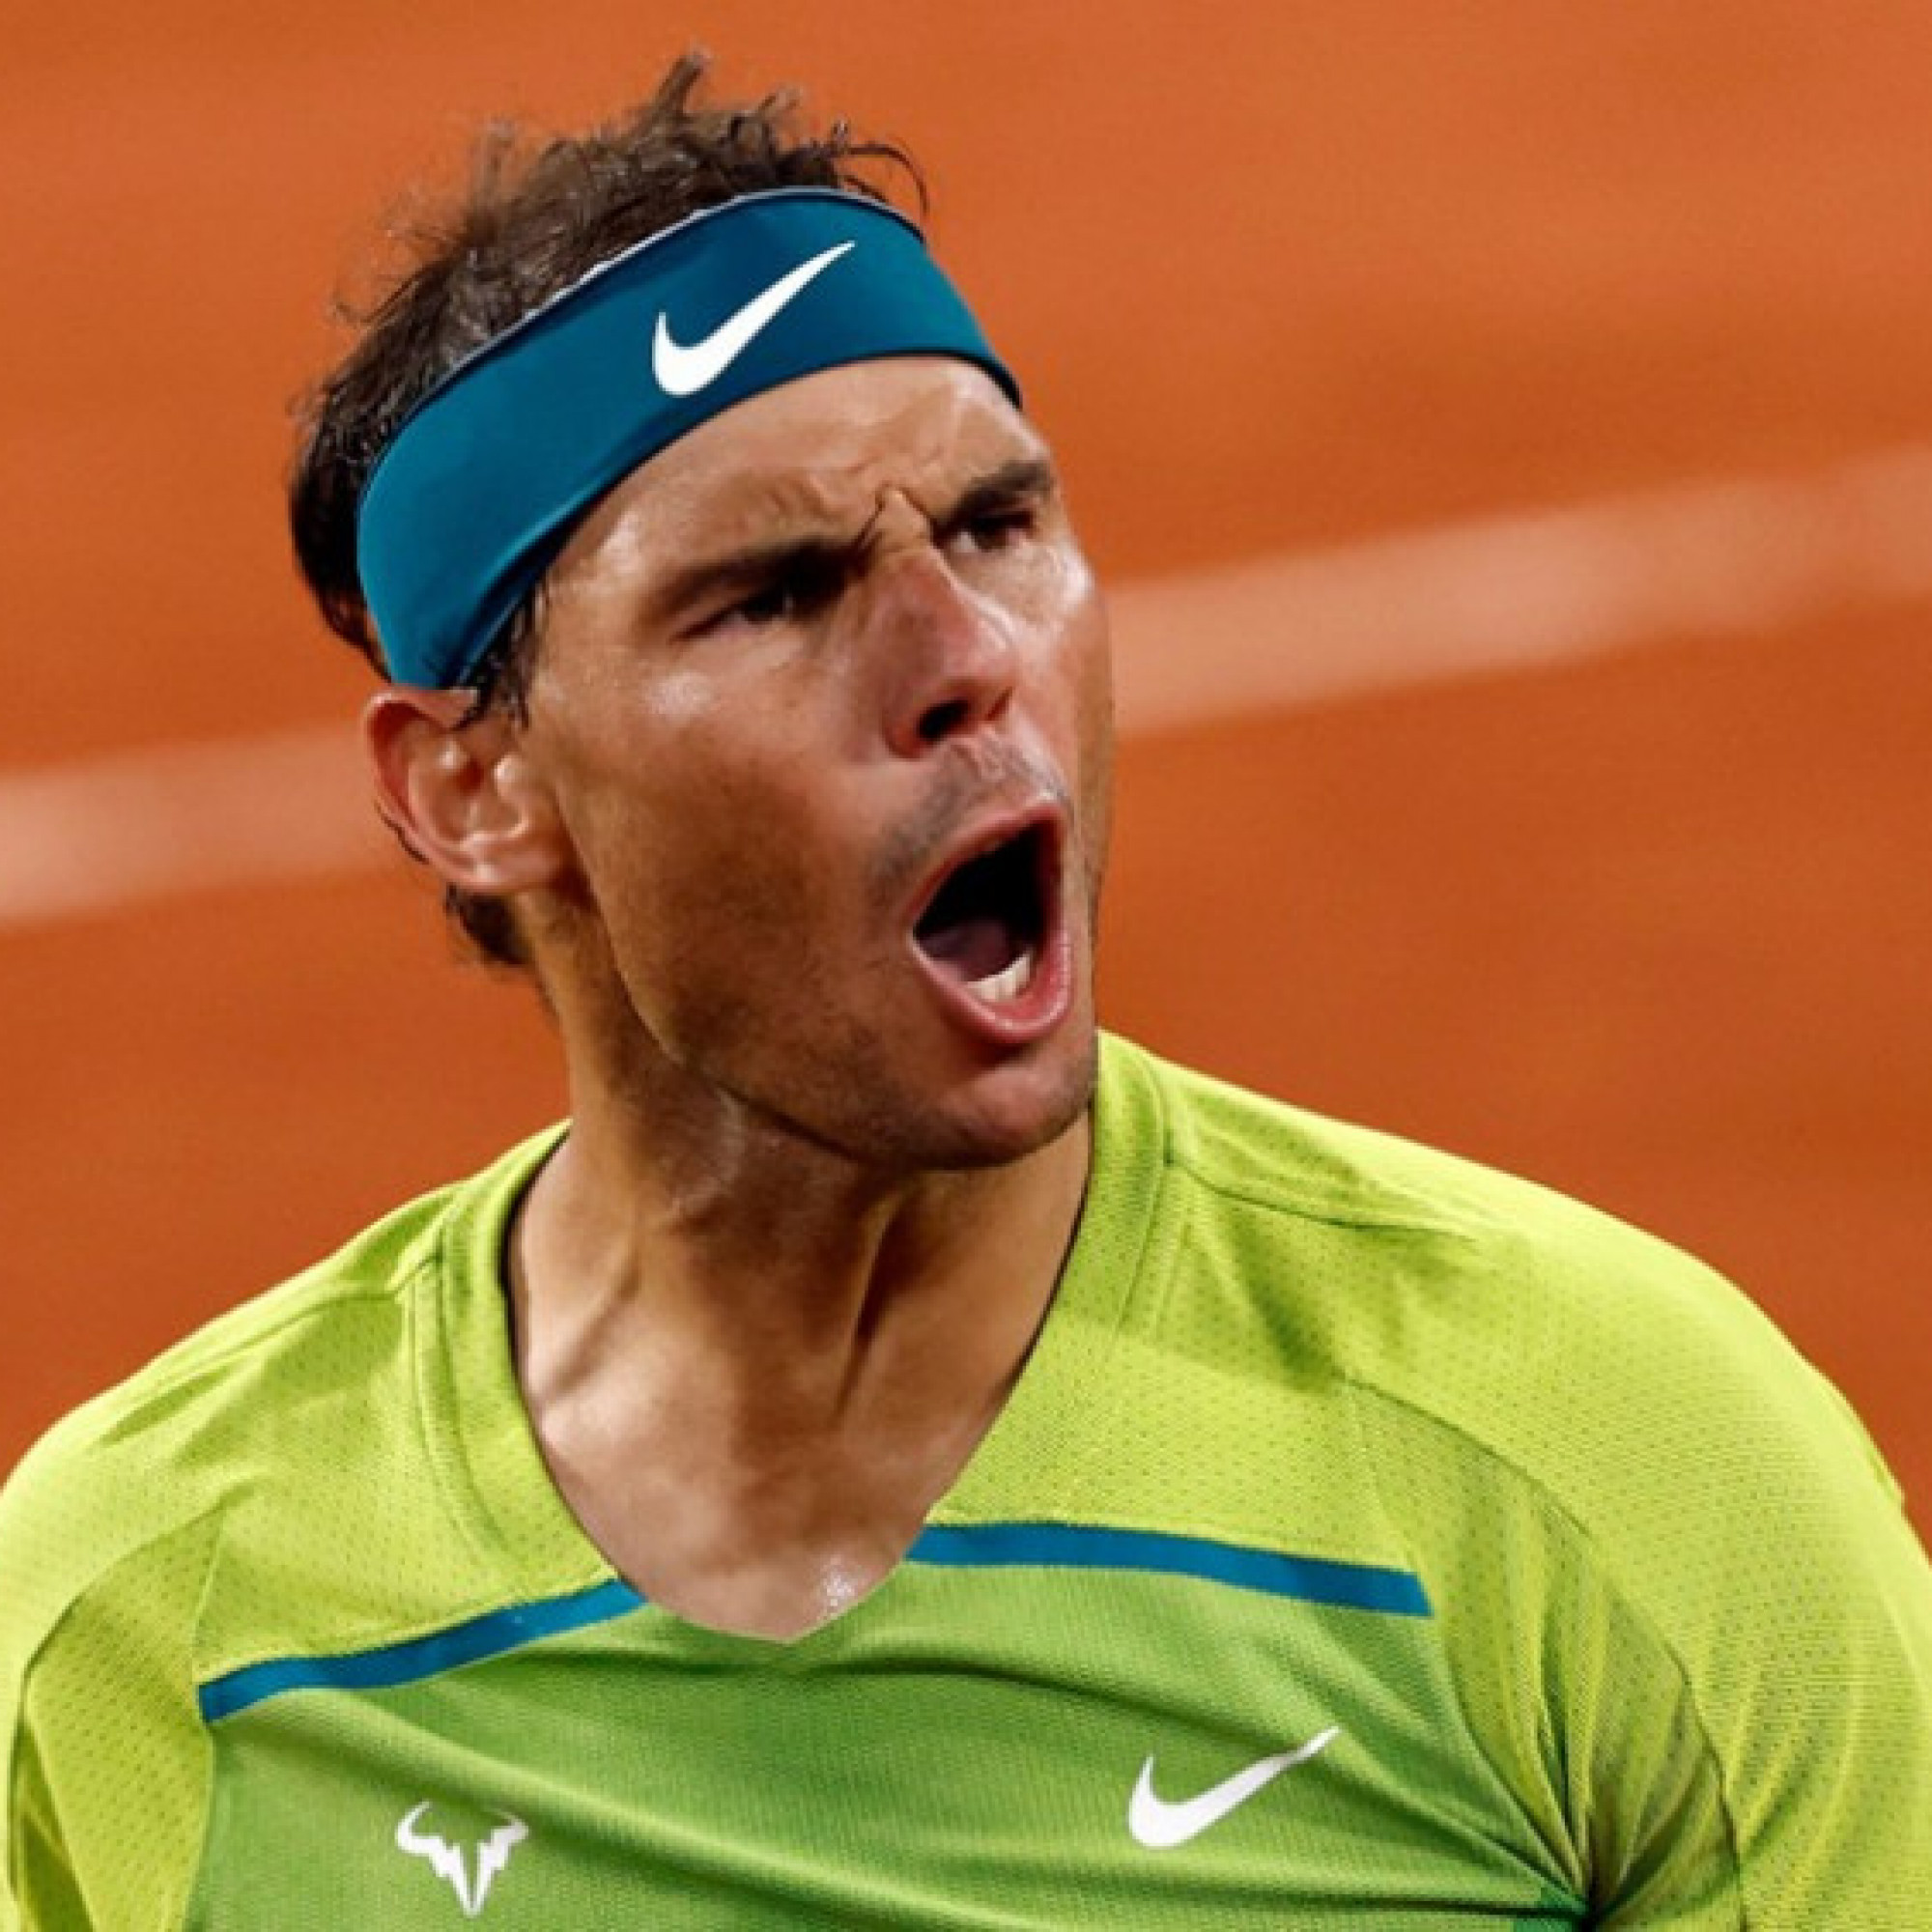  - Nóng nhất thể thao sáng 1/10: Huyền thoại tin "Vua đất nện" Nadal sẽ trở lại mạnh mẽ